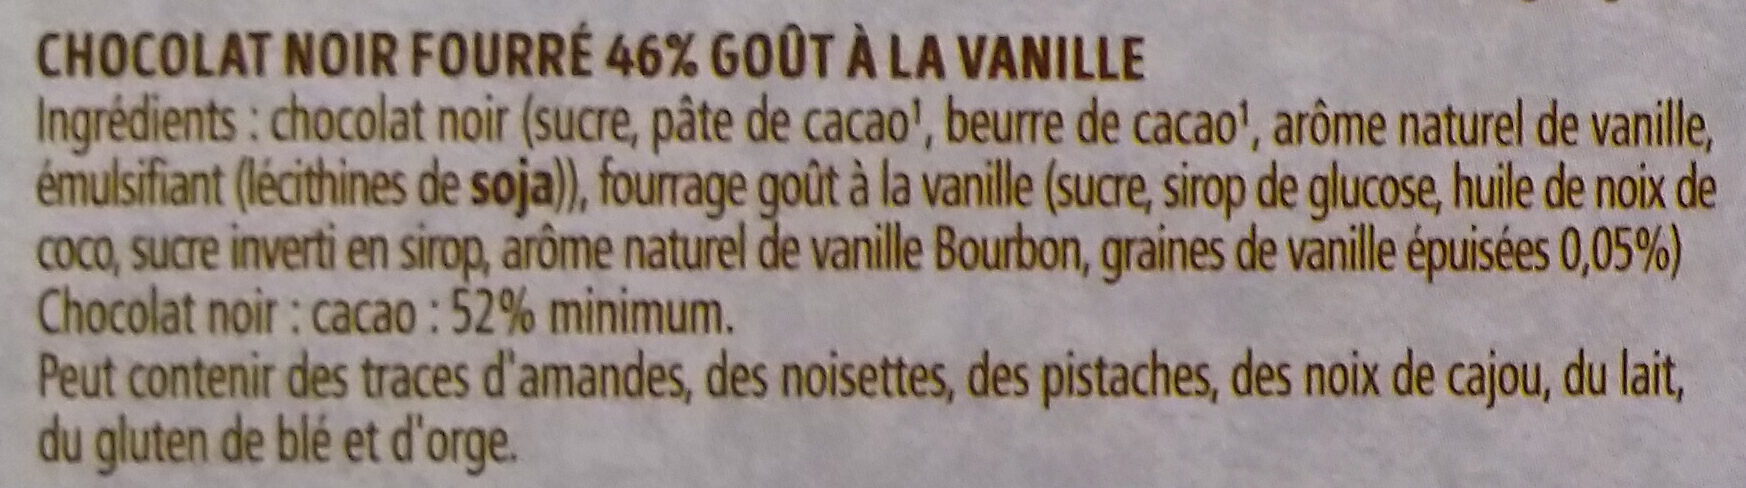 Chocolat fourré goût Vanille - Ingrédients